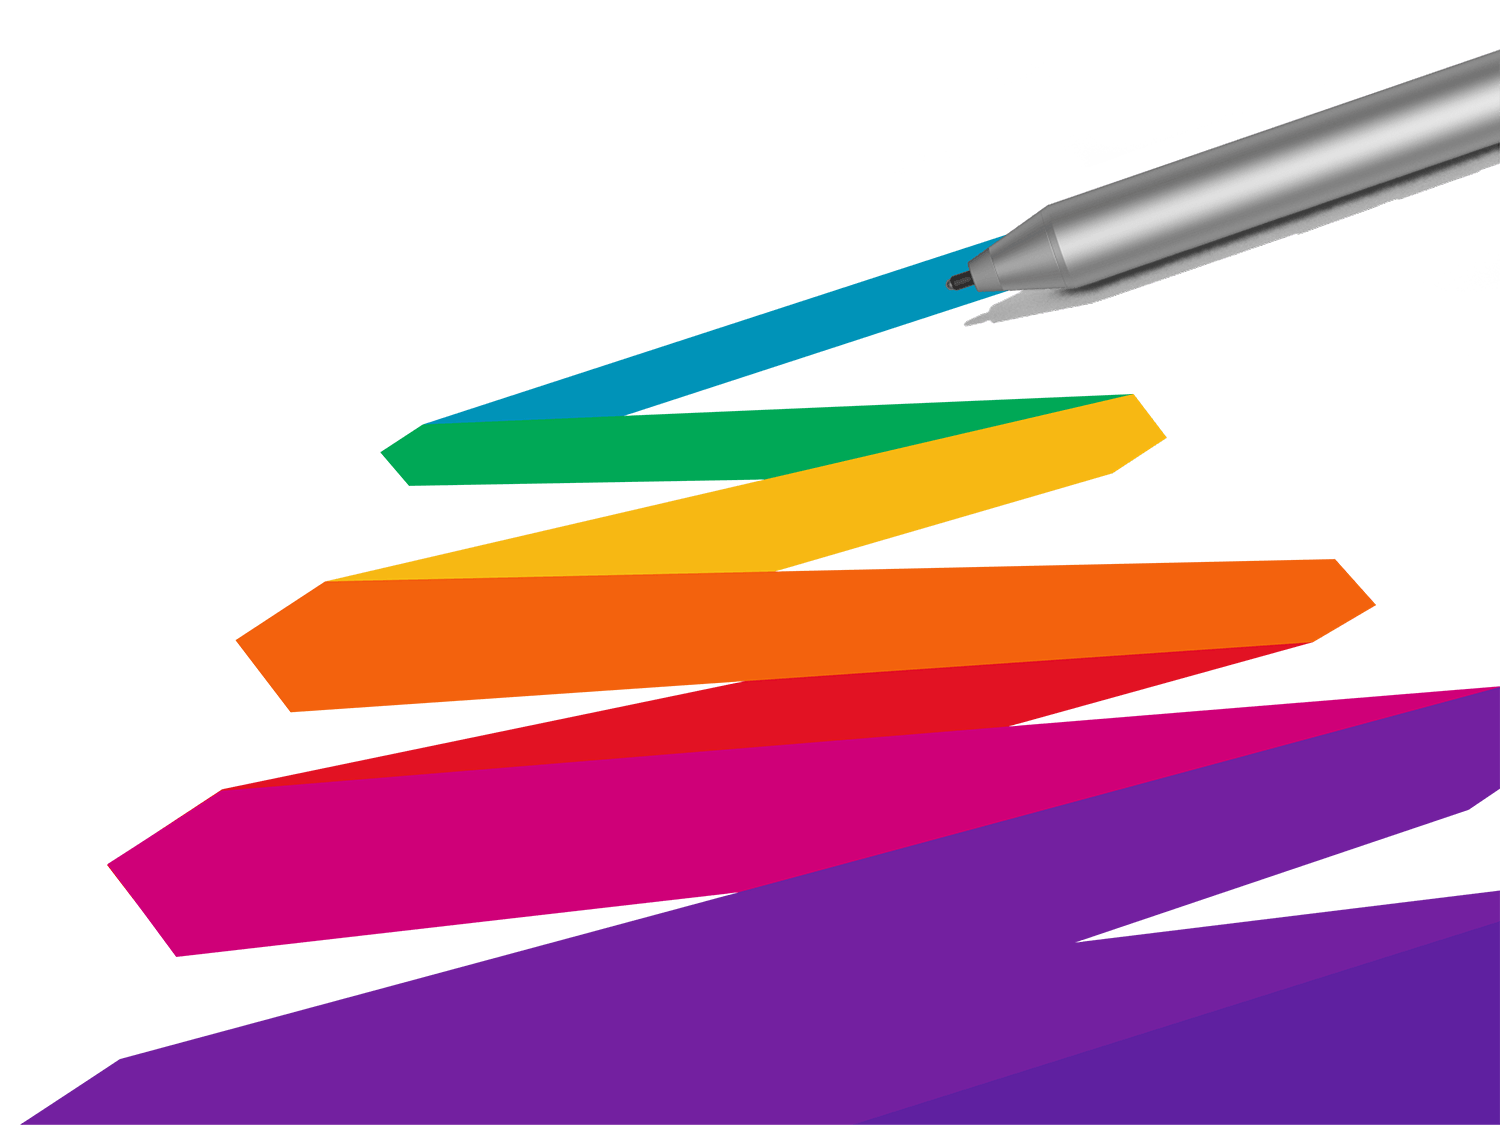 Košās krāsas, ko zīmē Surface pildspalva